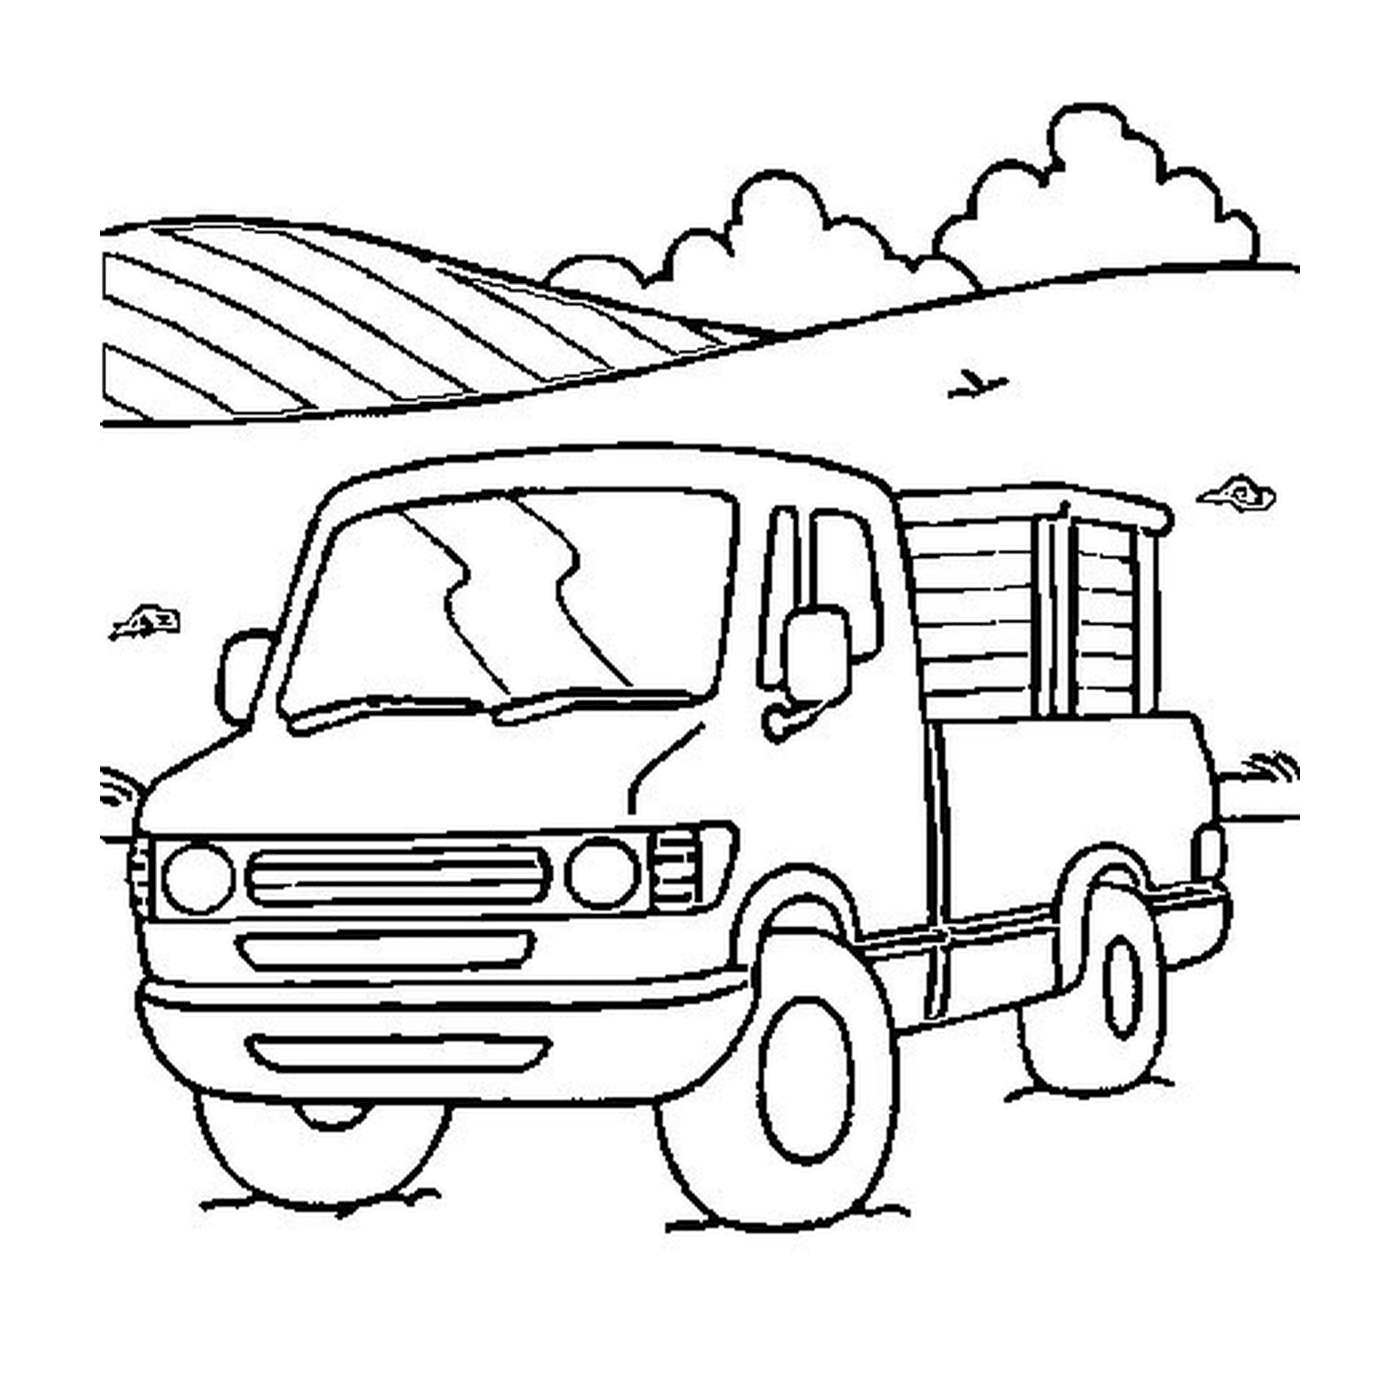  Грузовик, припаркованный на поле возле холма 